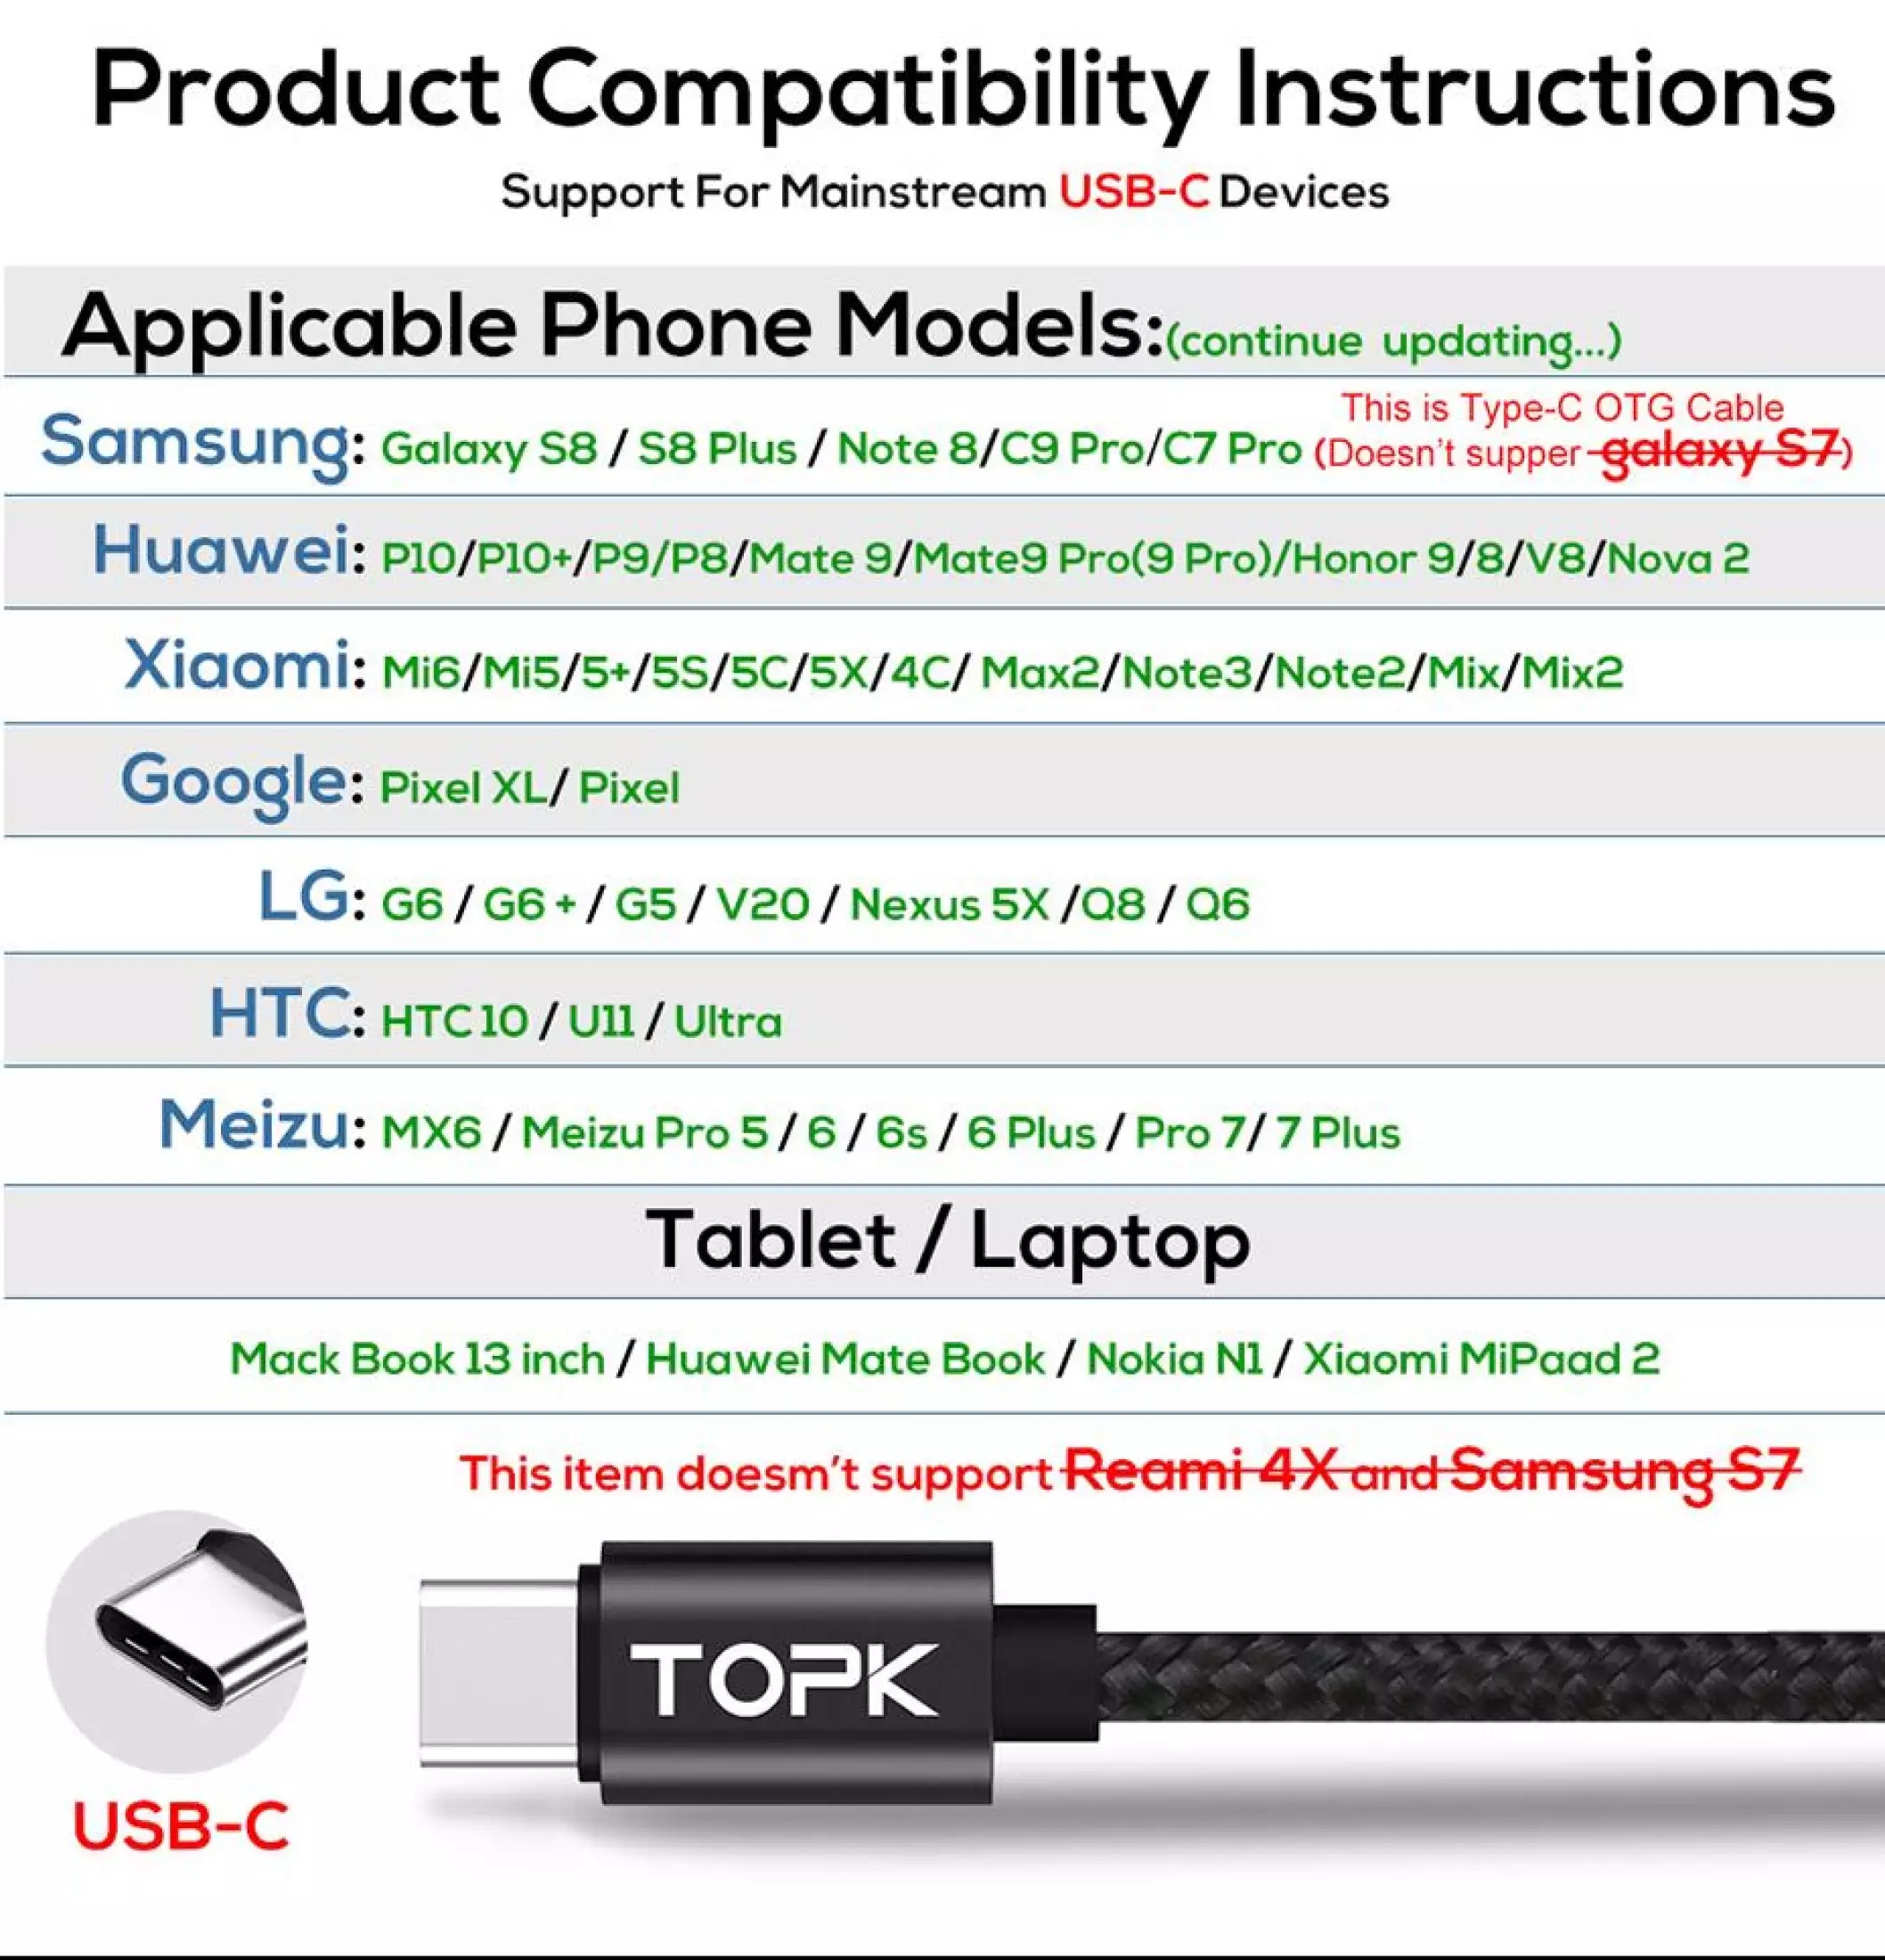 HÀNG CHÍNH HÃNG - Cáp sạc TOPK USB - Type-C AC27 dùng cho Samsung Xiaomi Huawei giá tốt - INTL - Phân phối bởi TOPK VIỆT NAM